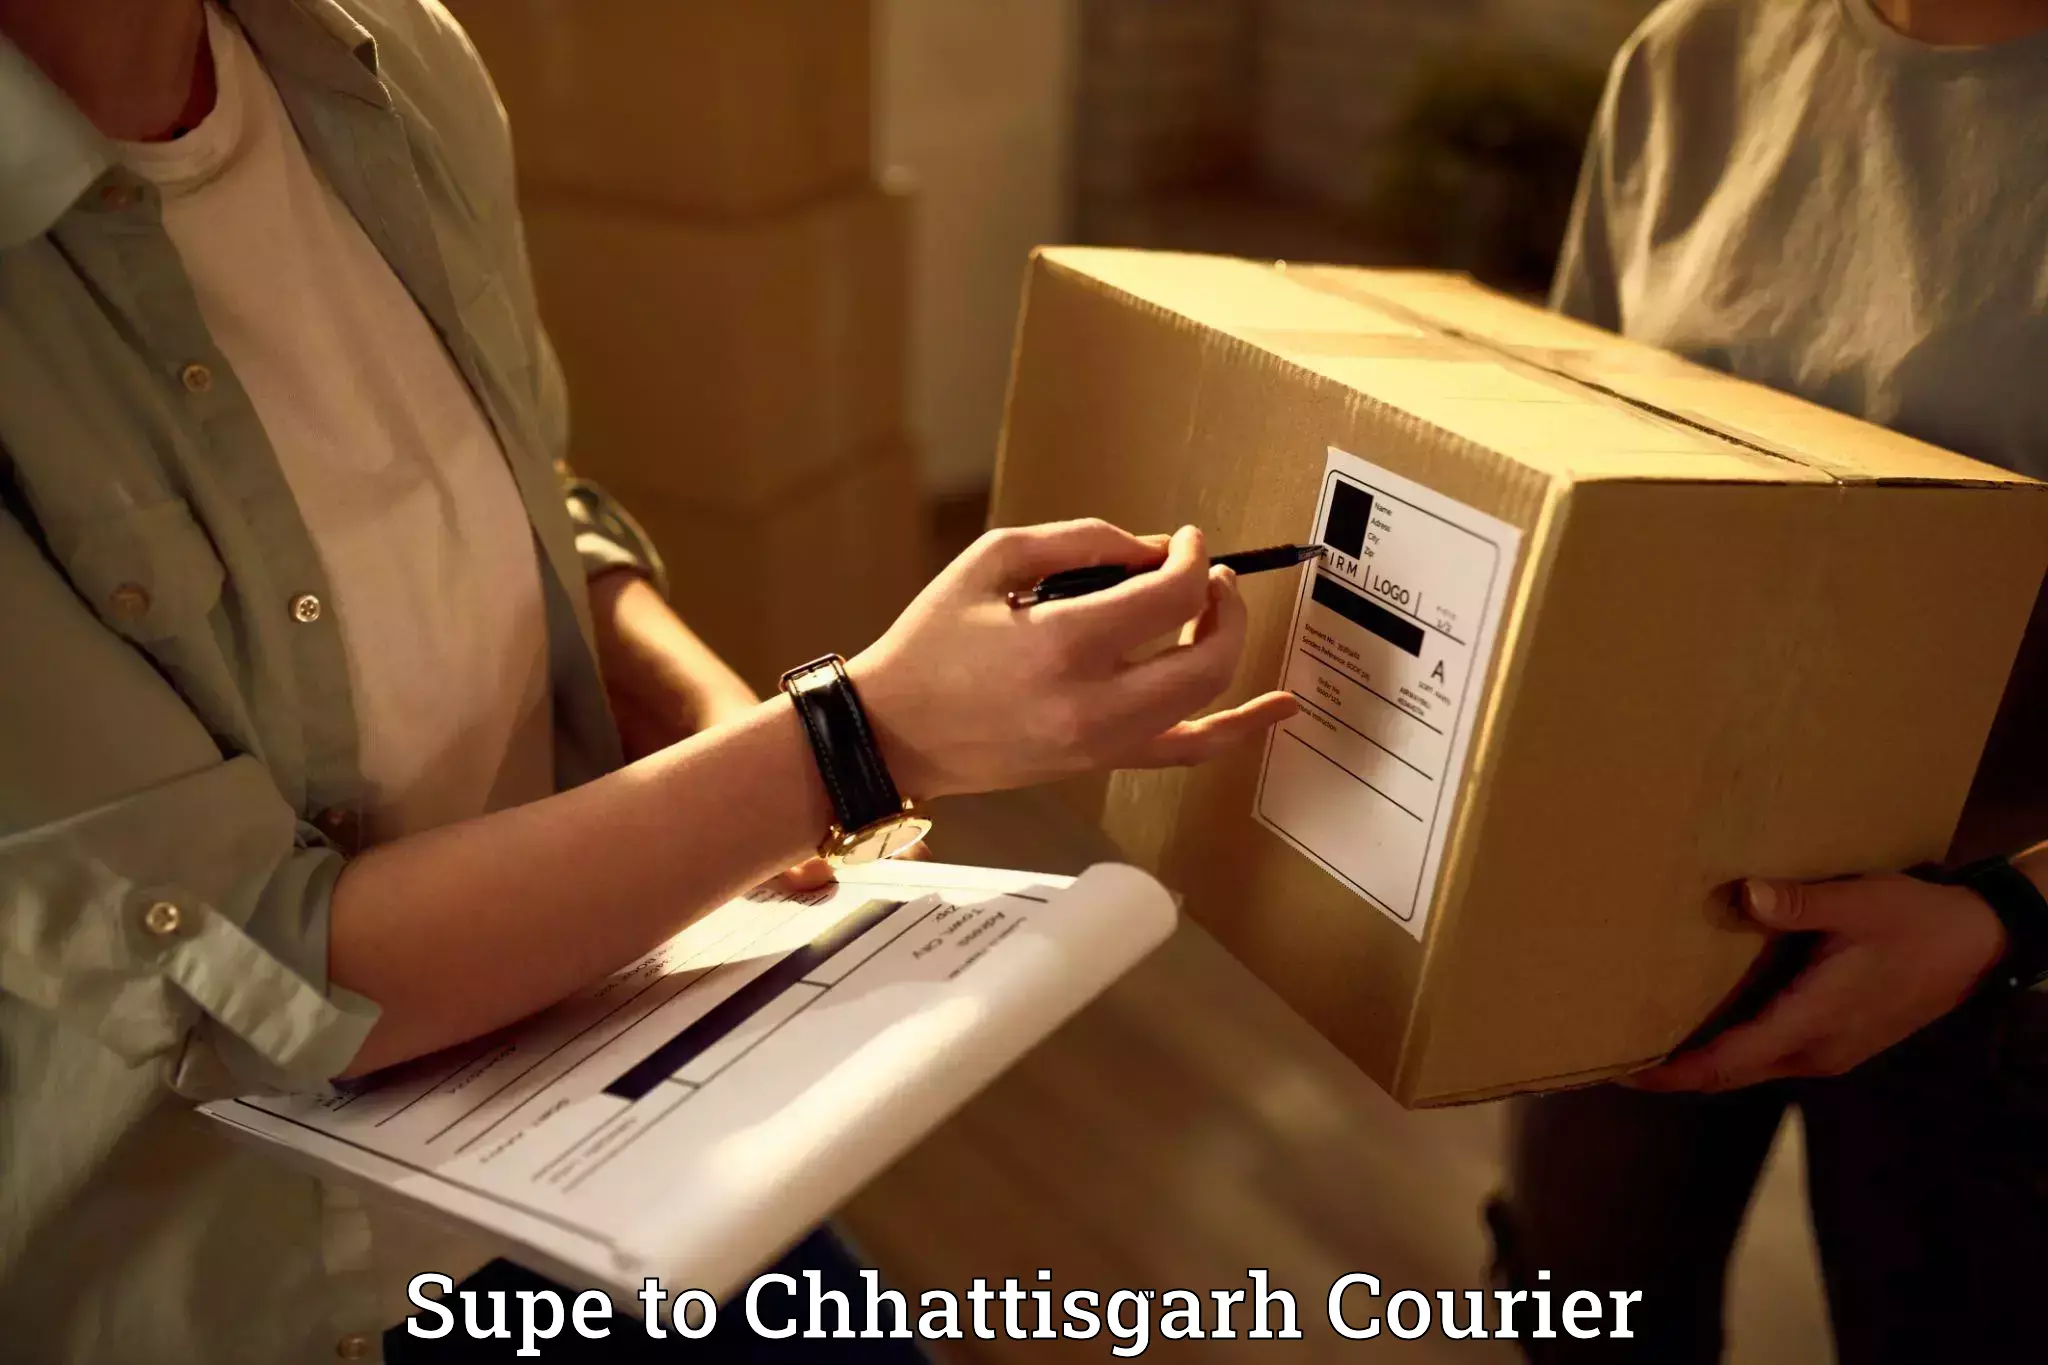 Quick moving services Supe to Chhattisgarh